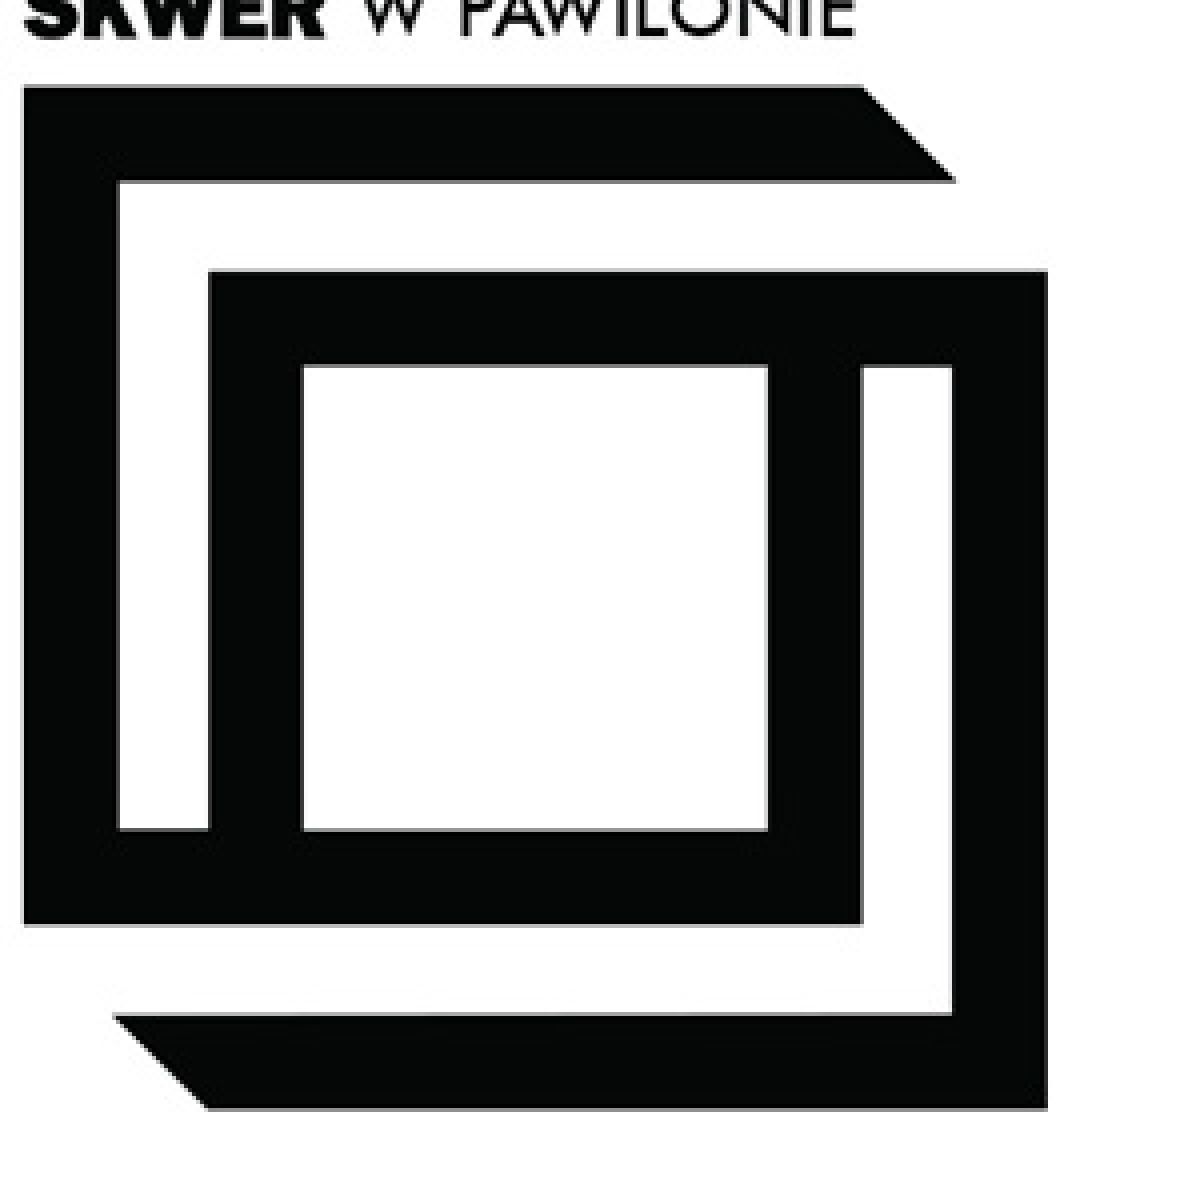 Skwer w Pawilonie - Muzeum Sztuki Nowoczesnej w Warszawie i Skwer Sportów Miejskich zapraszają do wizyty